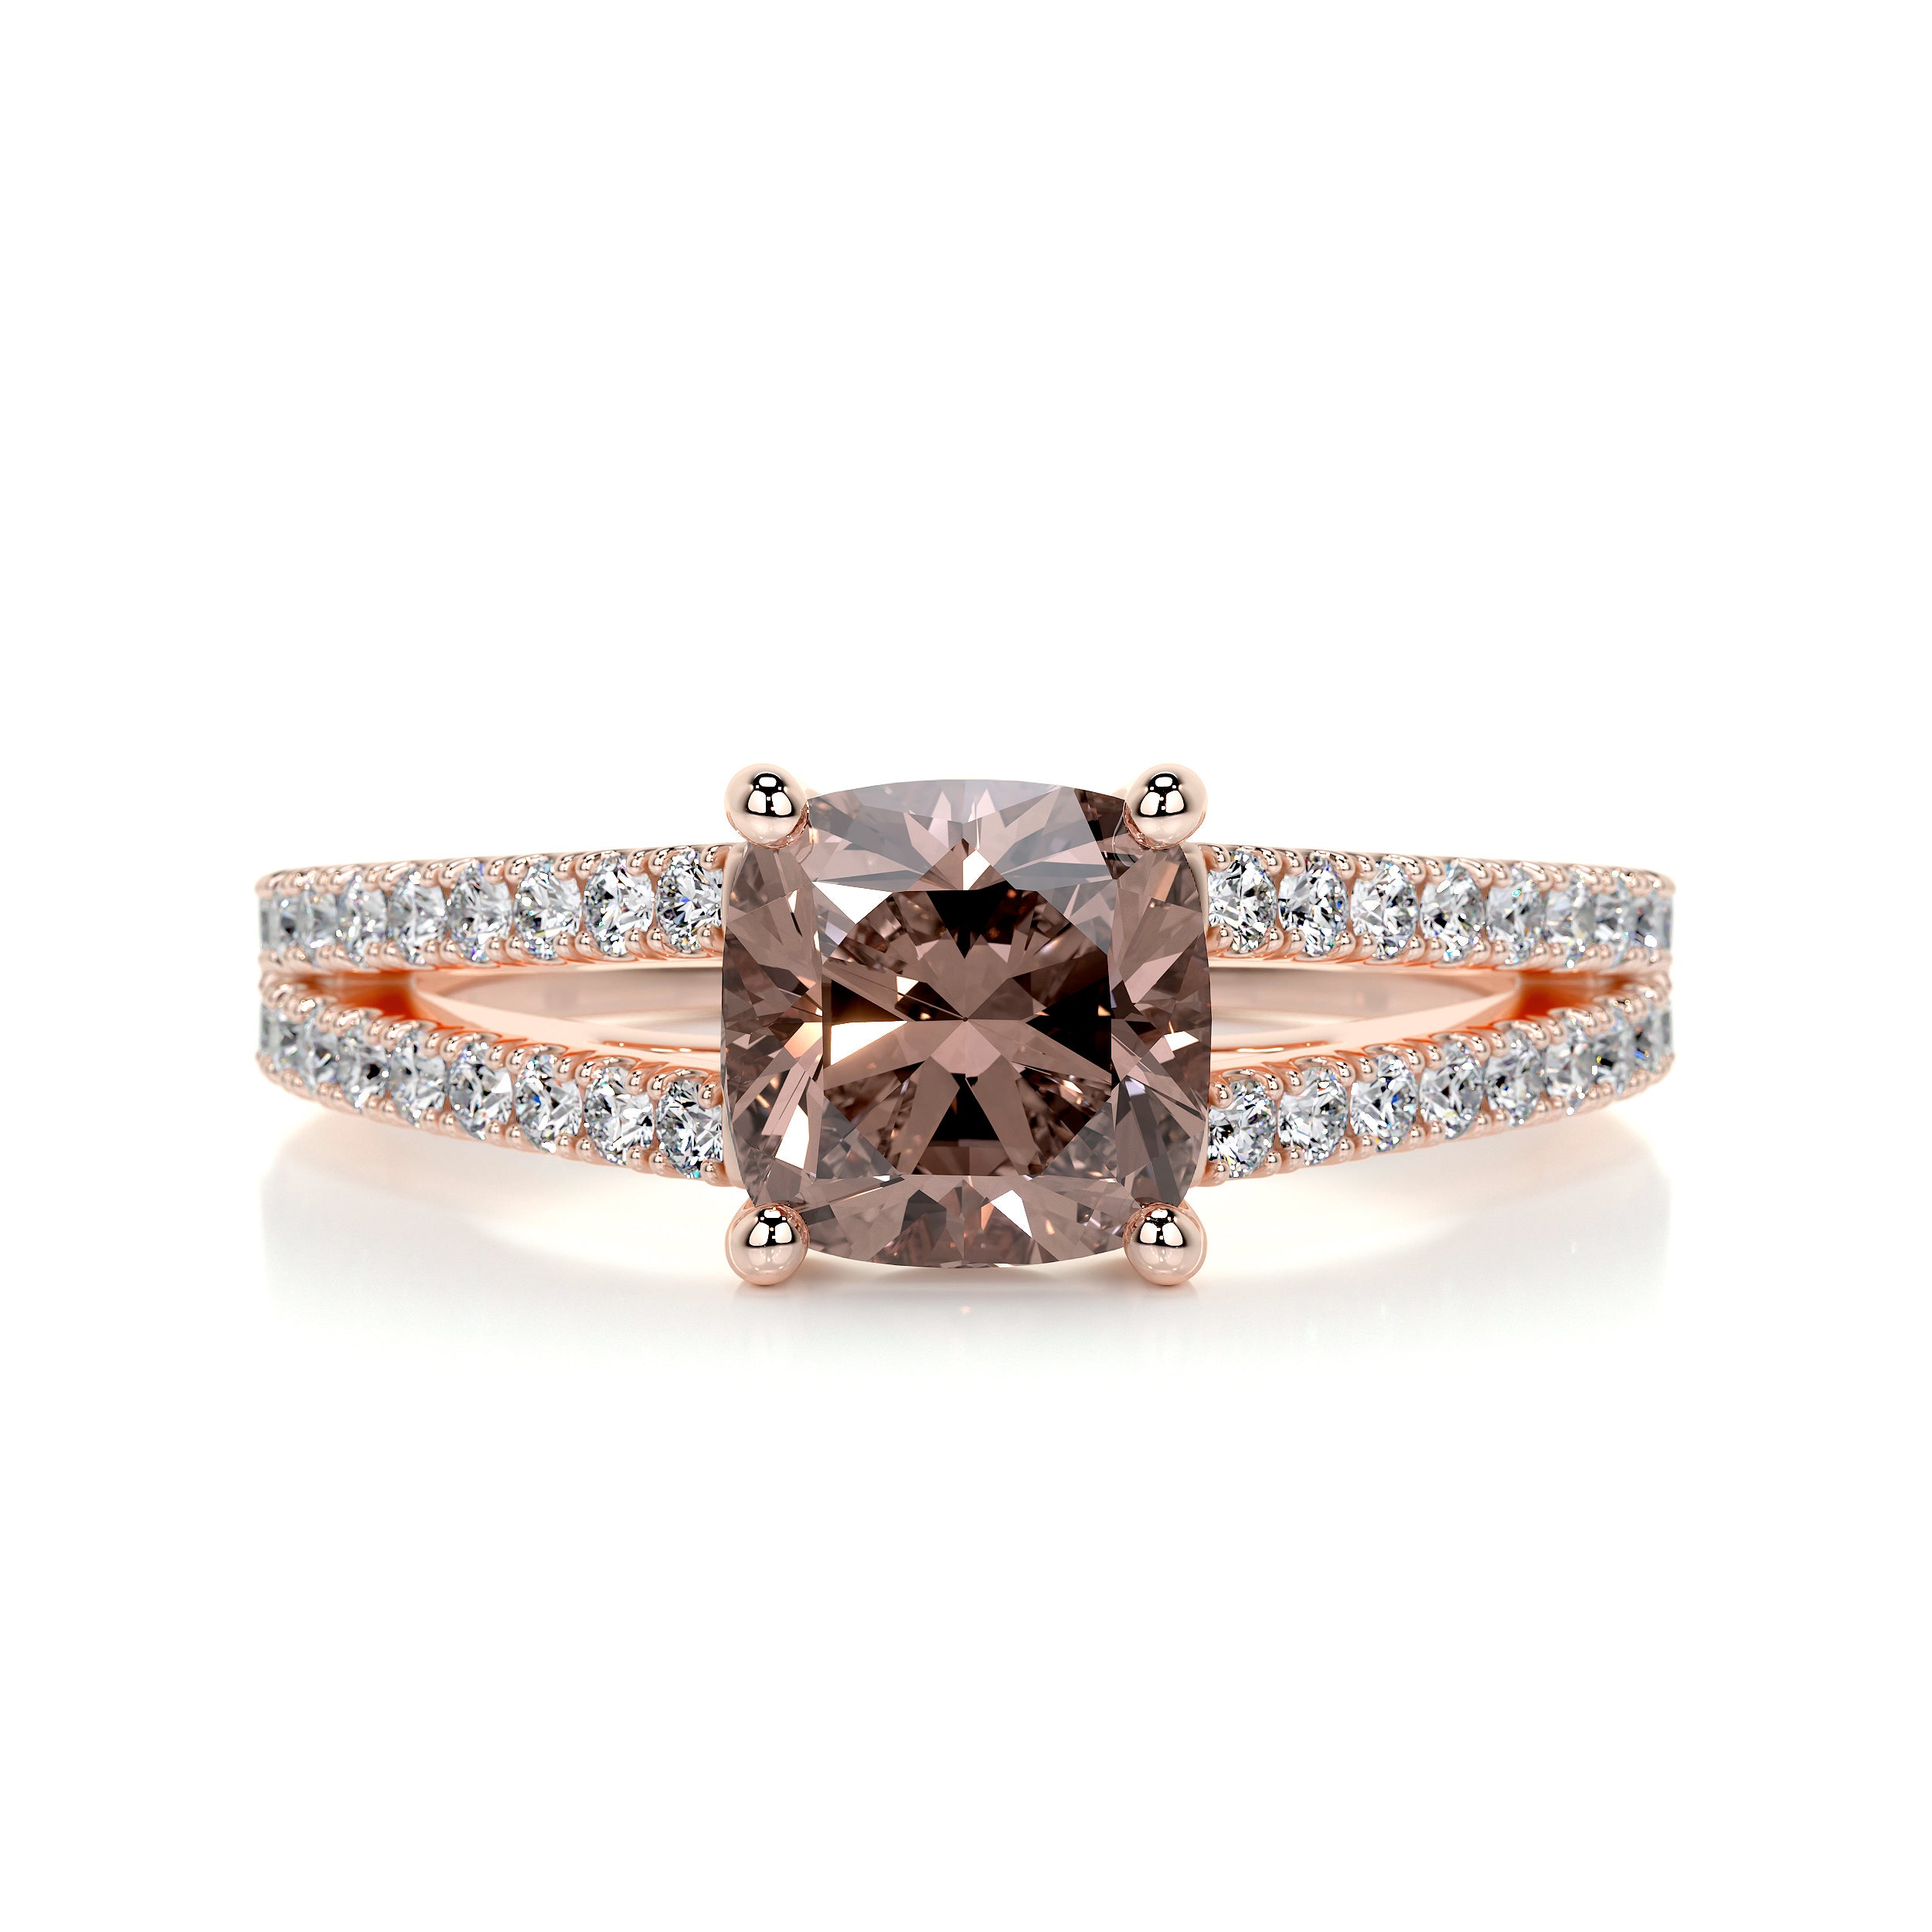 Sadie Gemstone & Diamonds Ring   (2 Carat) -14K Rose Gold